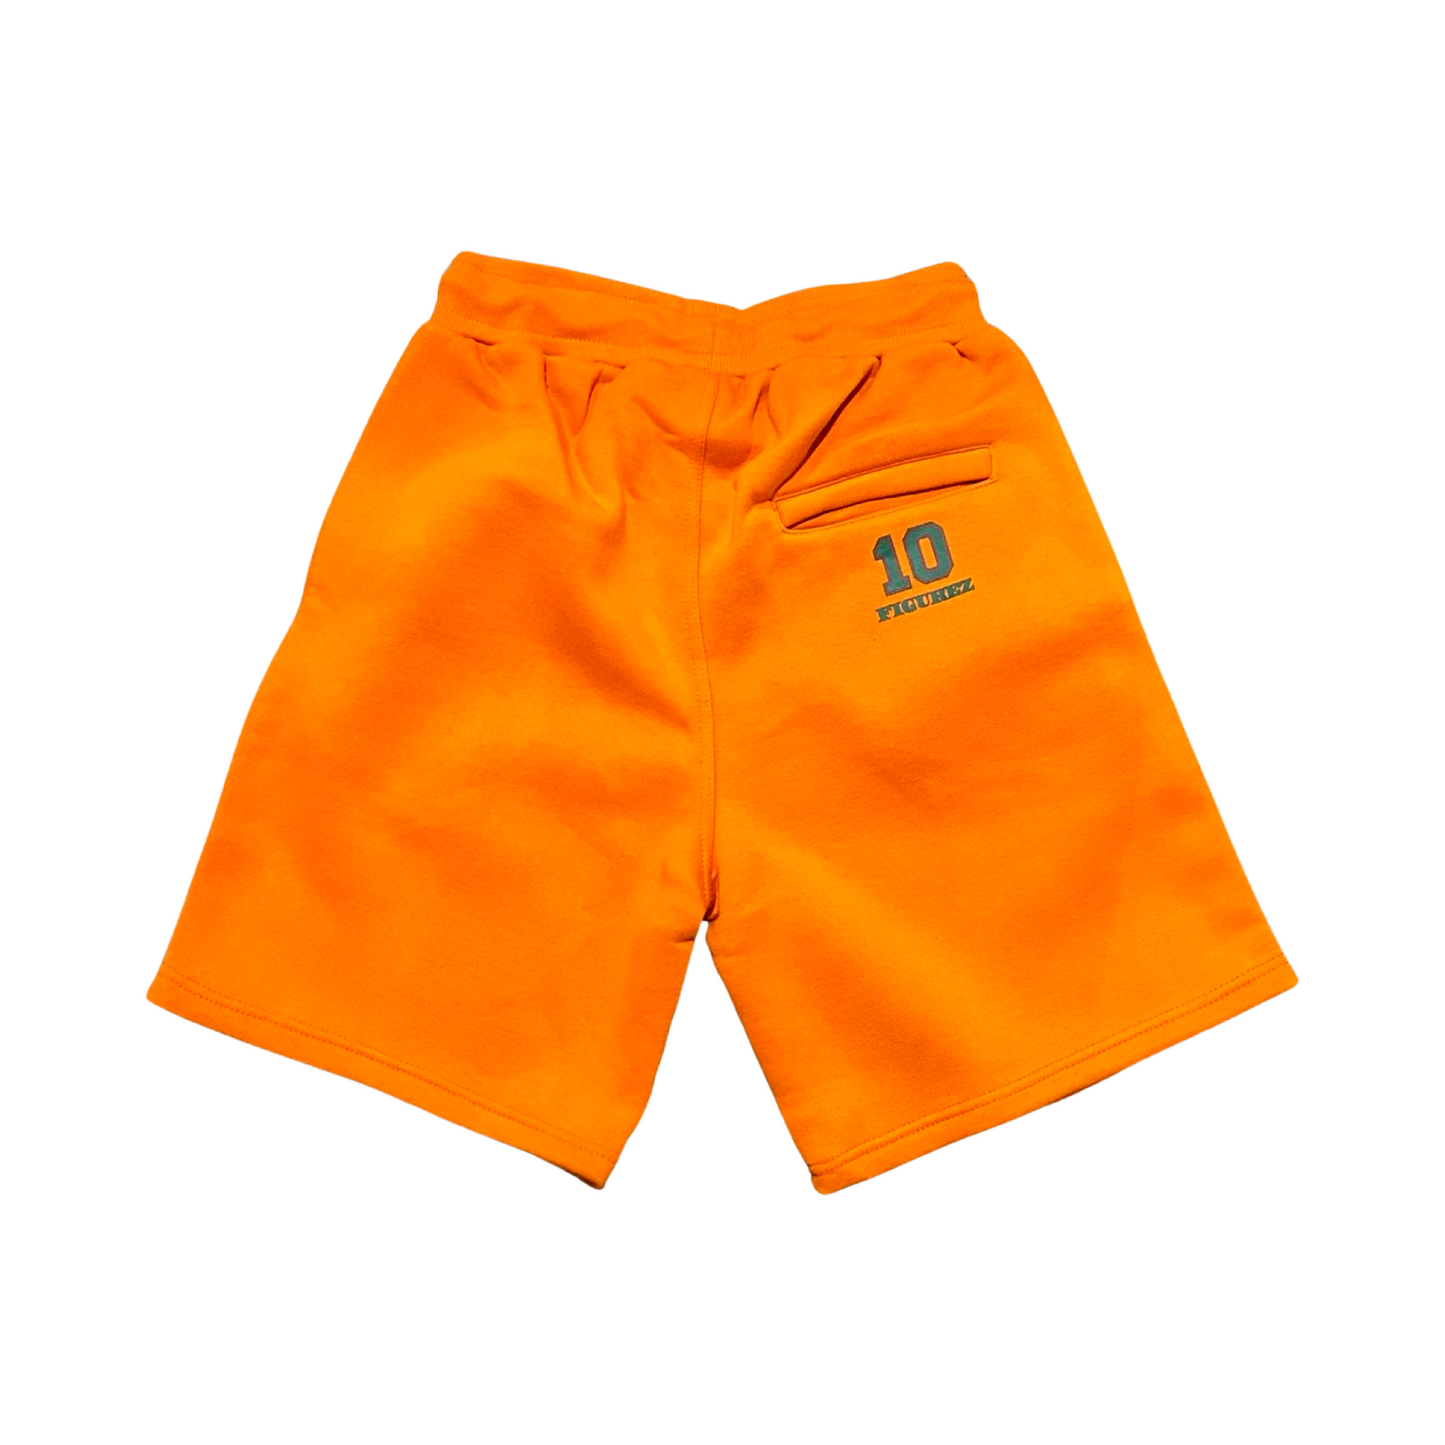 10 Figurez Orange Puff Print Shorts